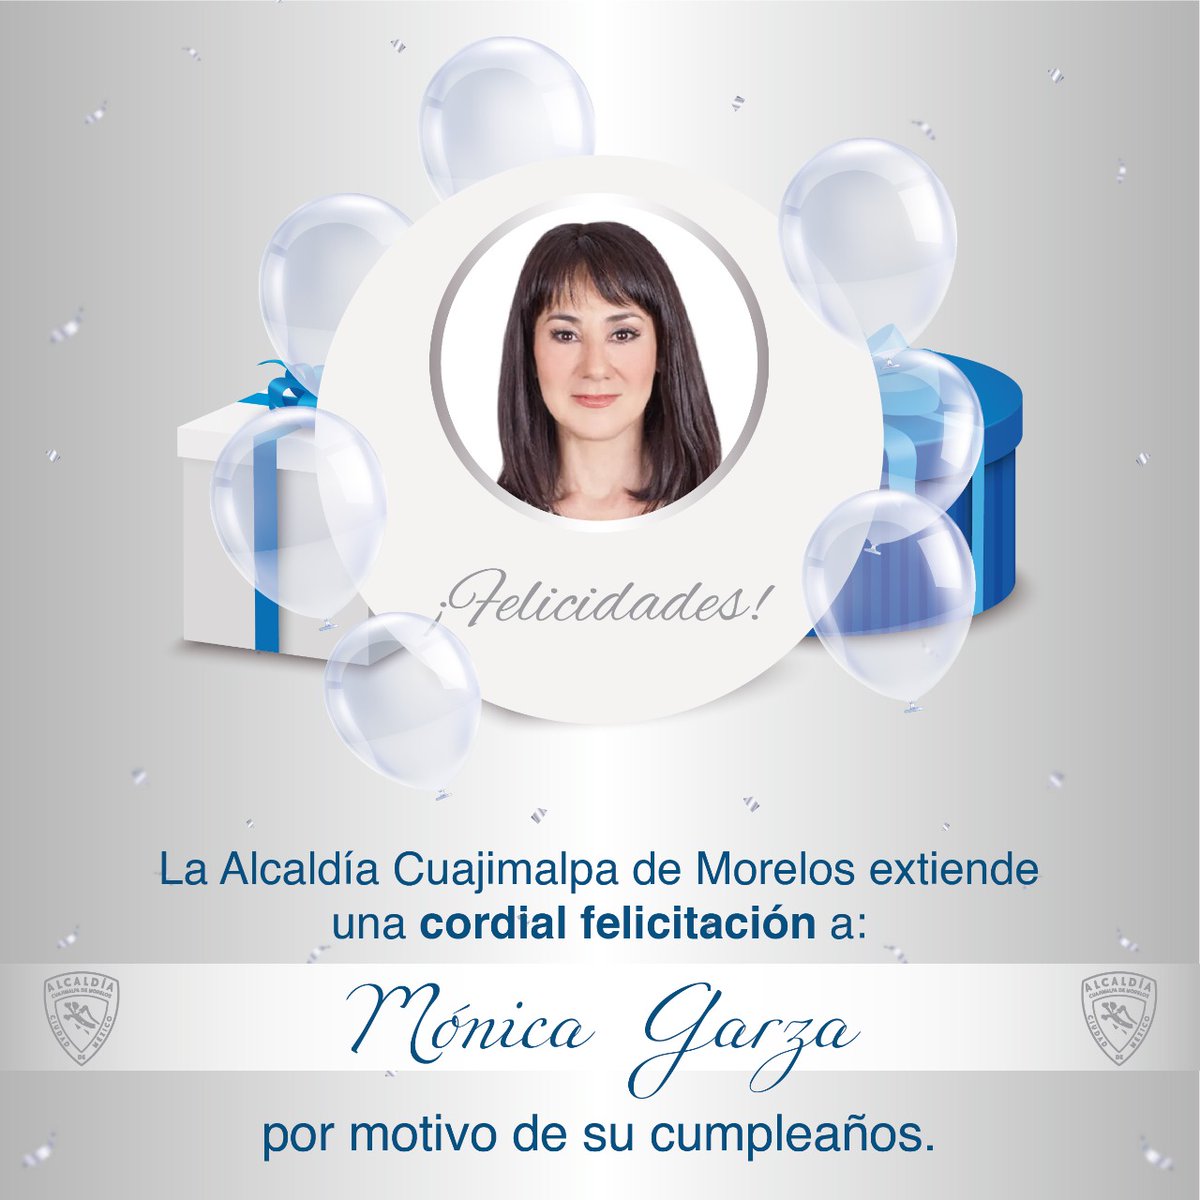 La alcaldía Cuajimalpa de Morelos felicita muy cordialmente a Mónica Garza, talentosa periodista que hoy esta cumpliendo años. ¡Muchas felicidades @monicagarzag!